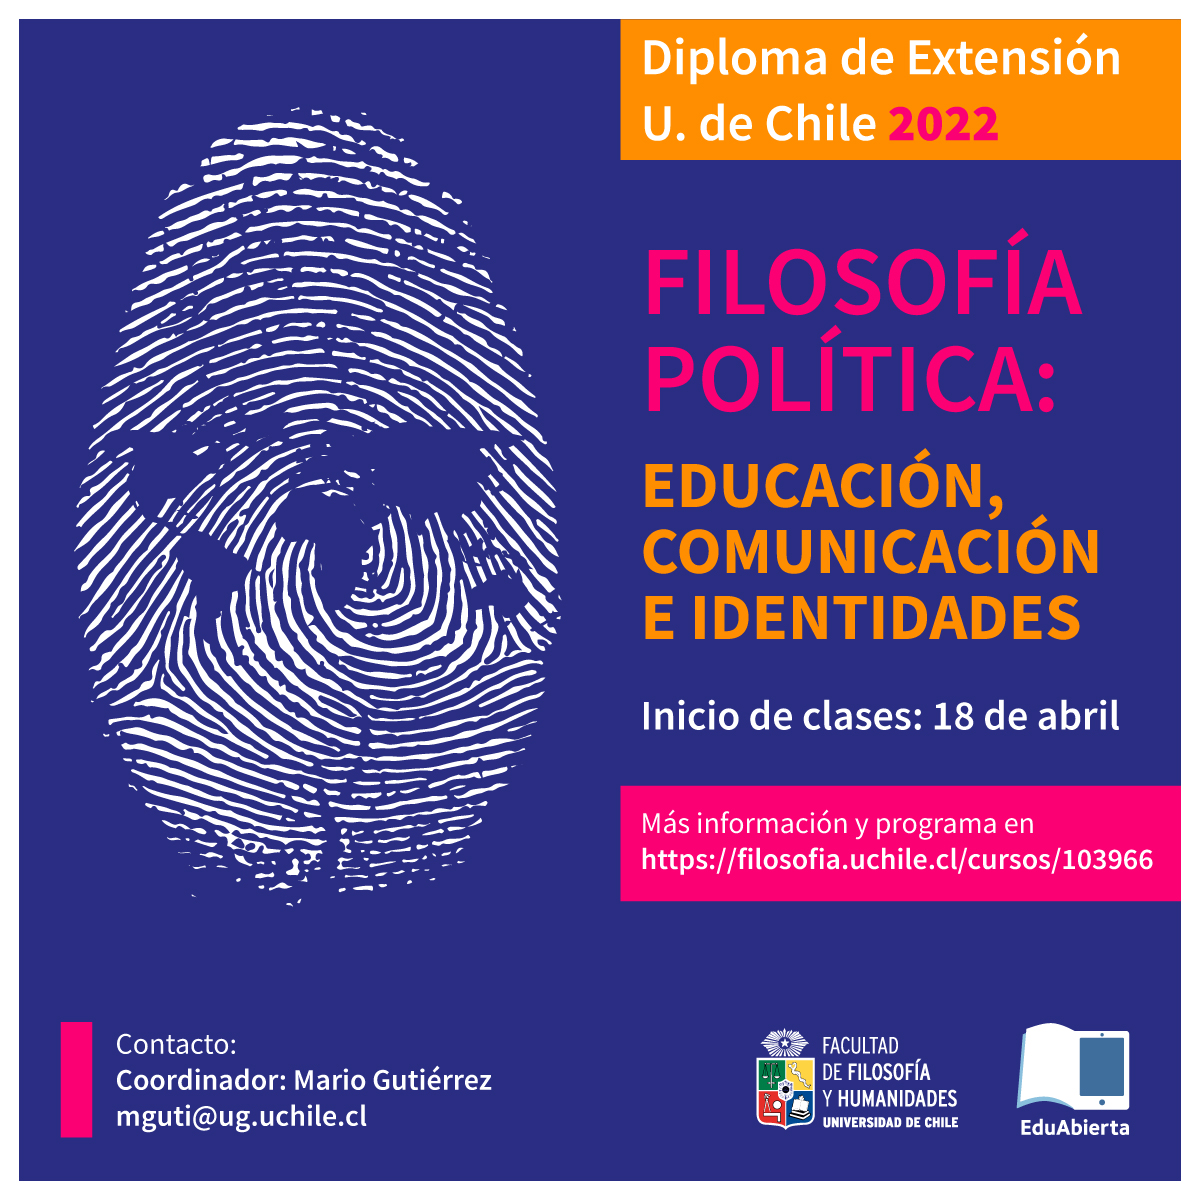 DIPLOMADO DE EXTENSIÓN EN FILOSOFÍA POLÍTICA: “EDUCACIÓN,  COMUNICACIÓN E IDENTIDADES”